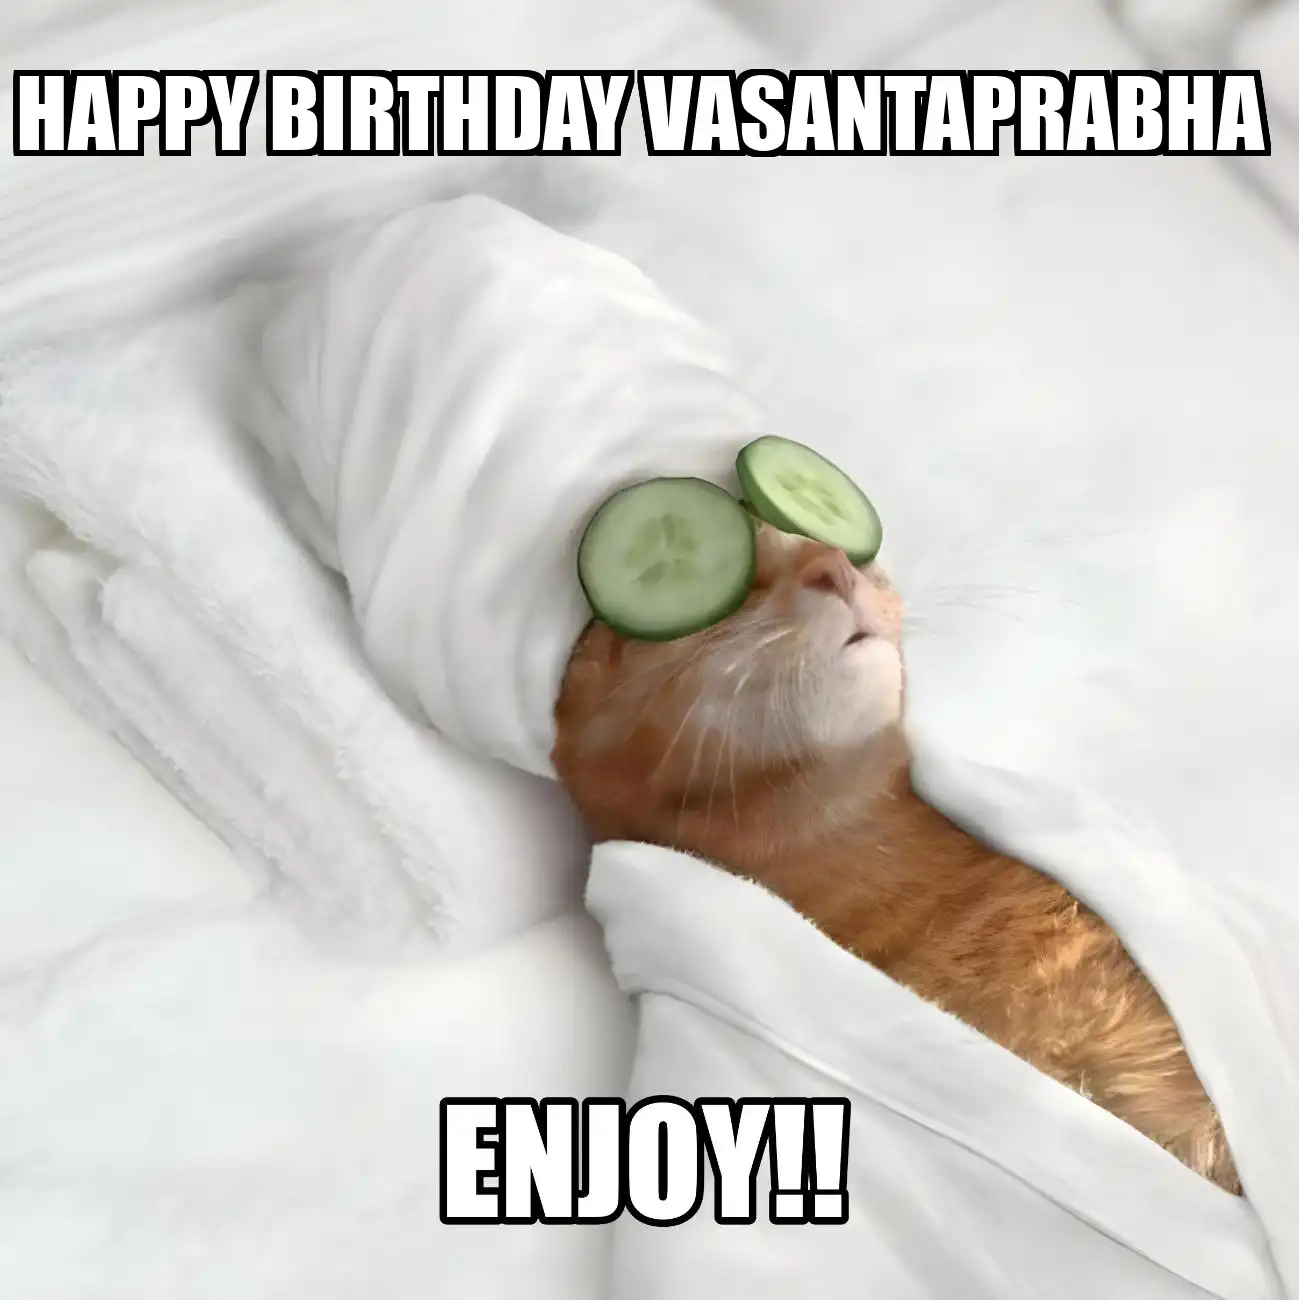 Happy Birthday Vasantaprabha Enjoy Cat Meme